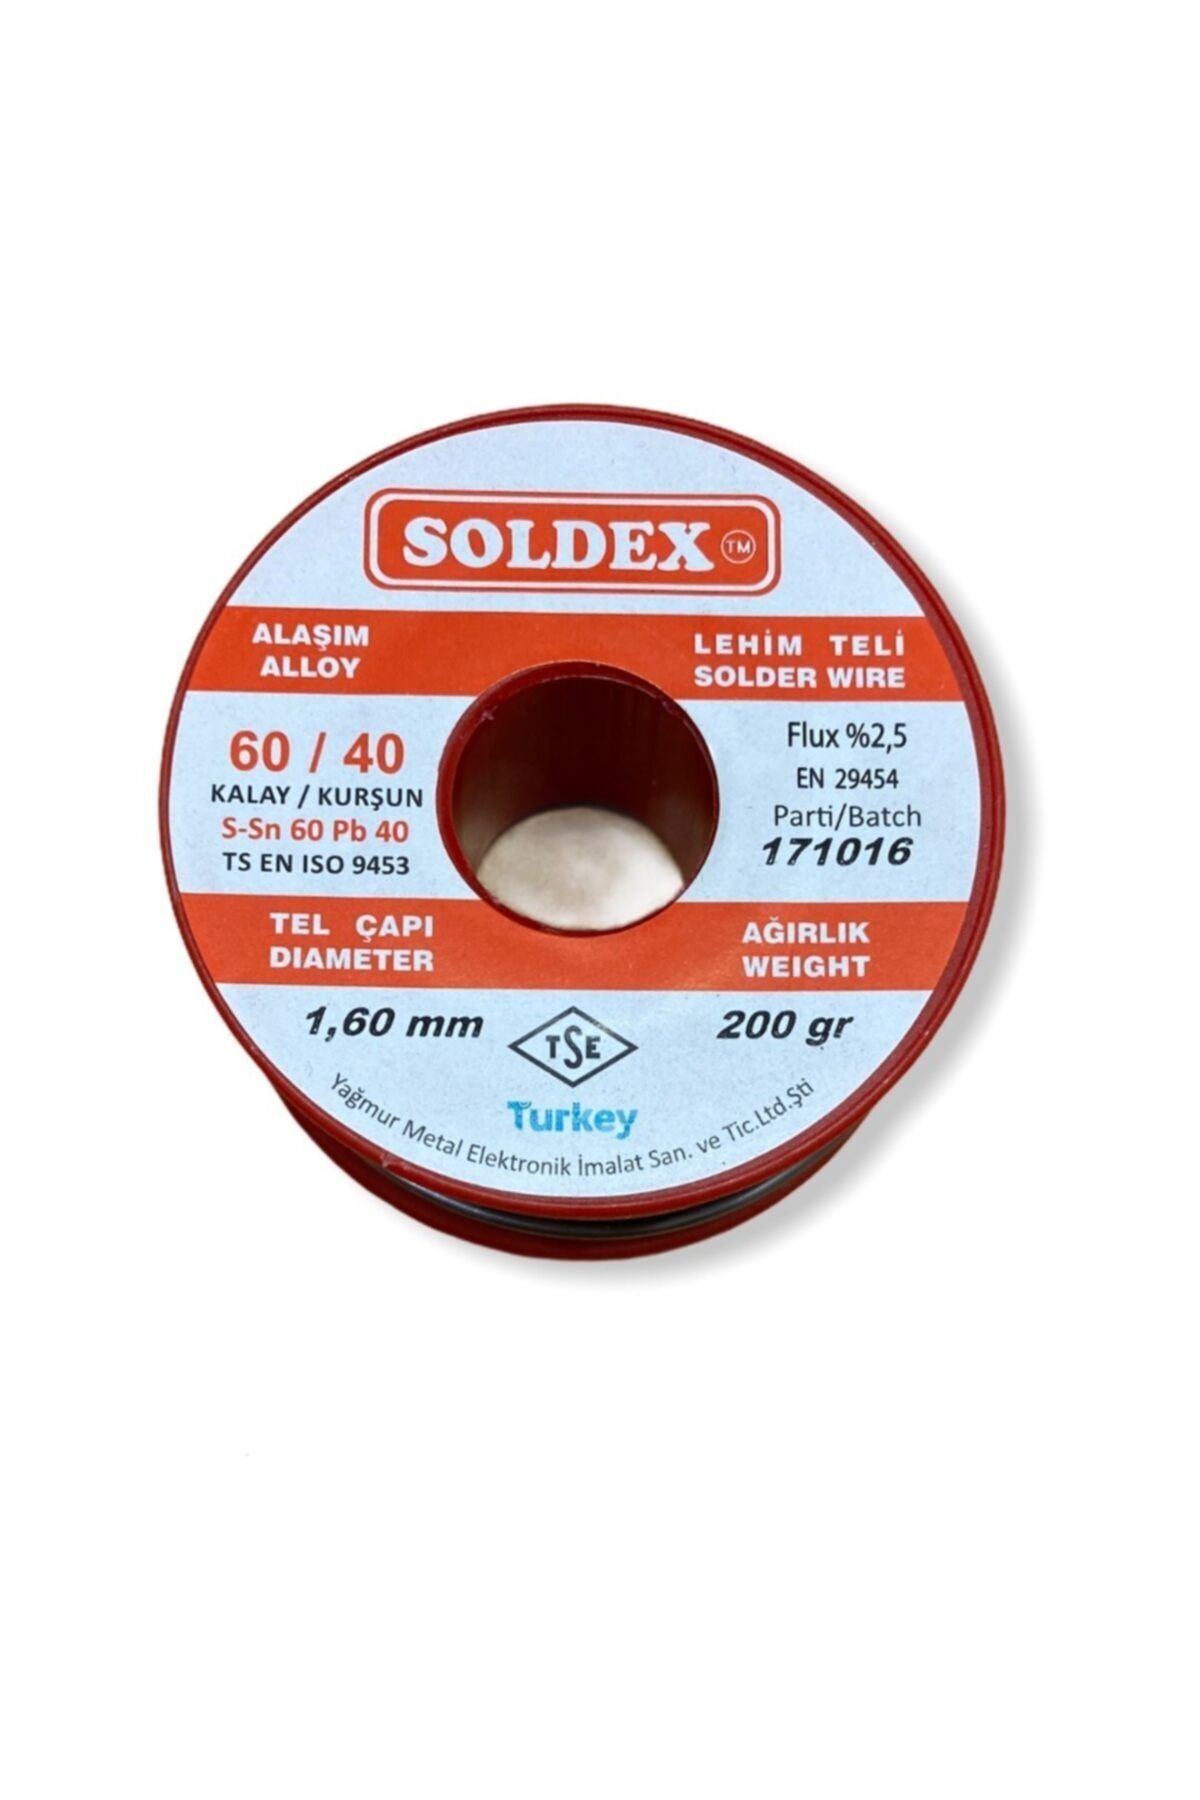 Soldex 60/40 Lehim Teli 200gr 1.60mm